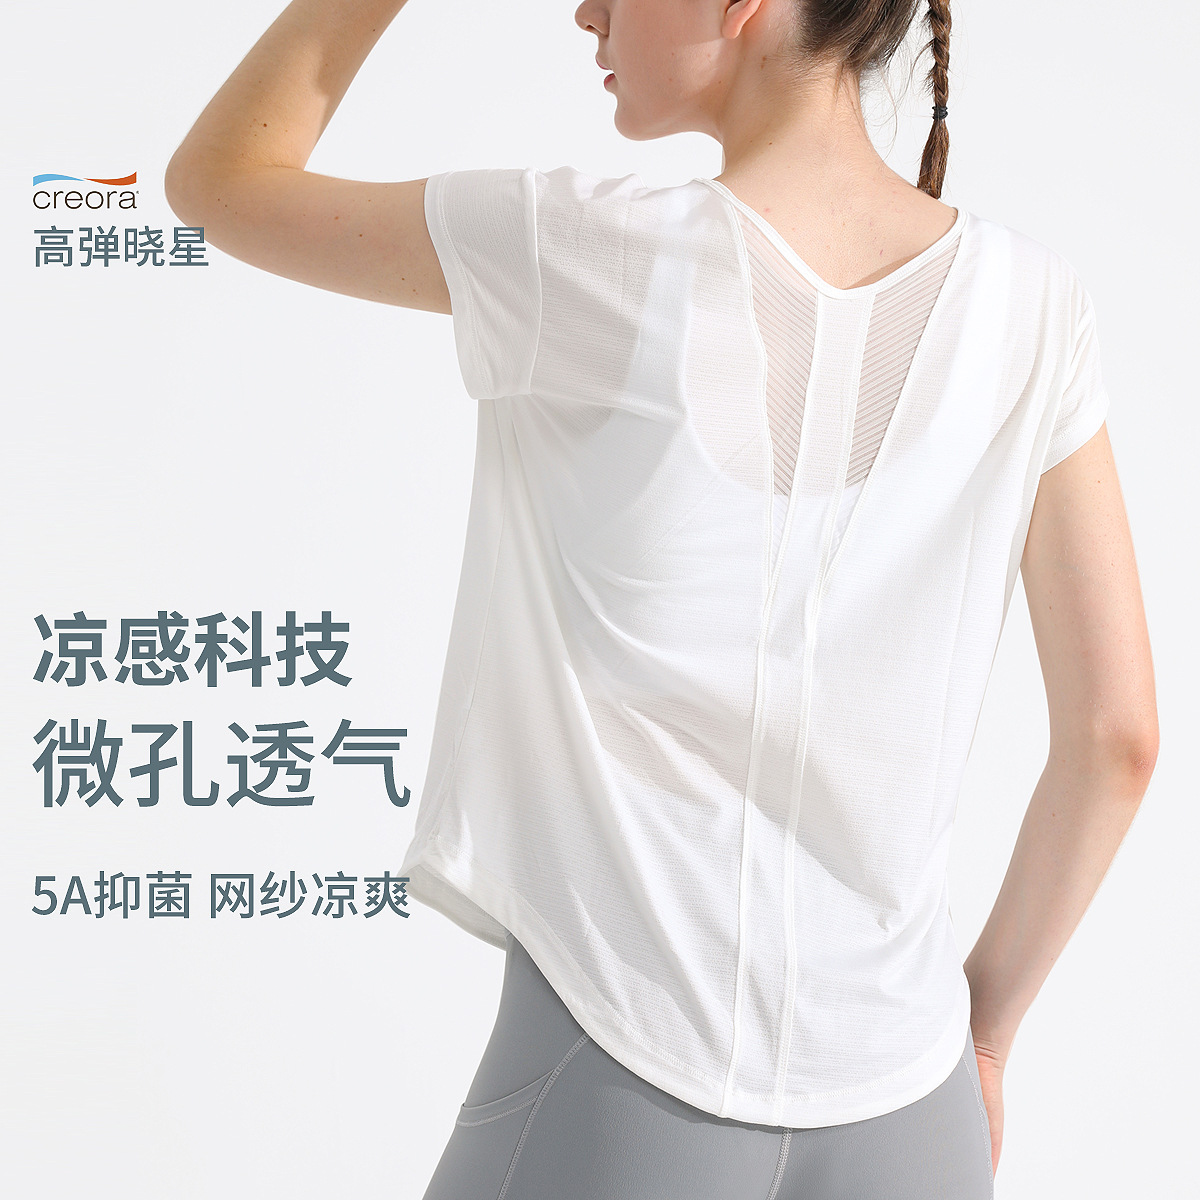 新款运动速干T恤女瑜伽服透气健身上衣宽松显瘦户外跑步短袖罩衫